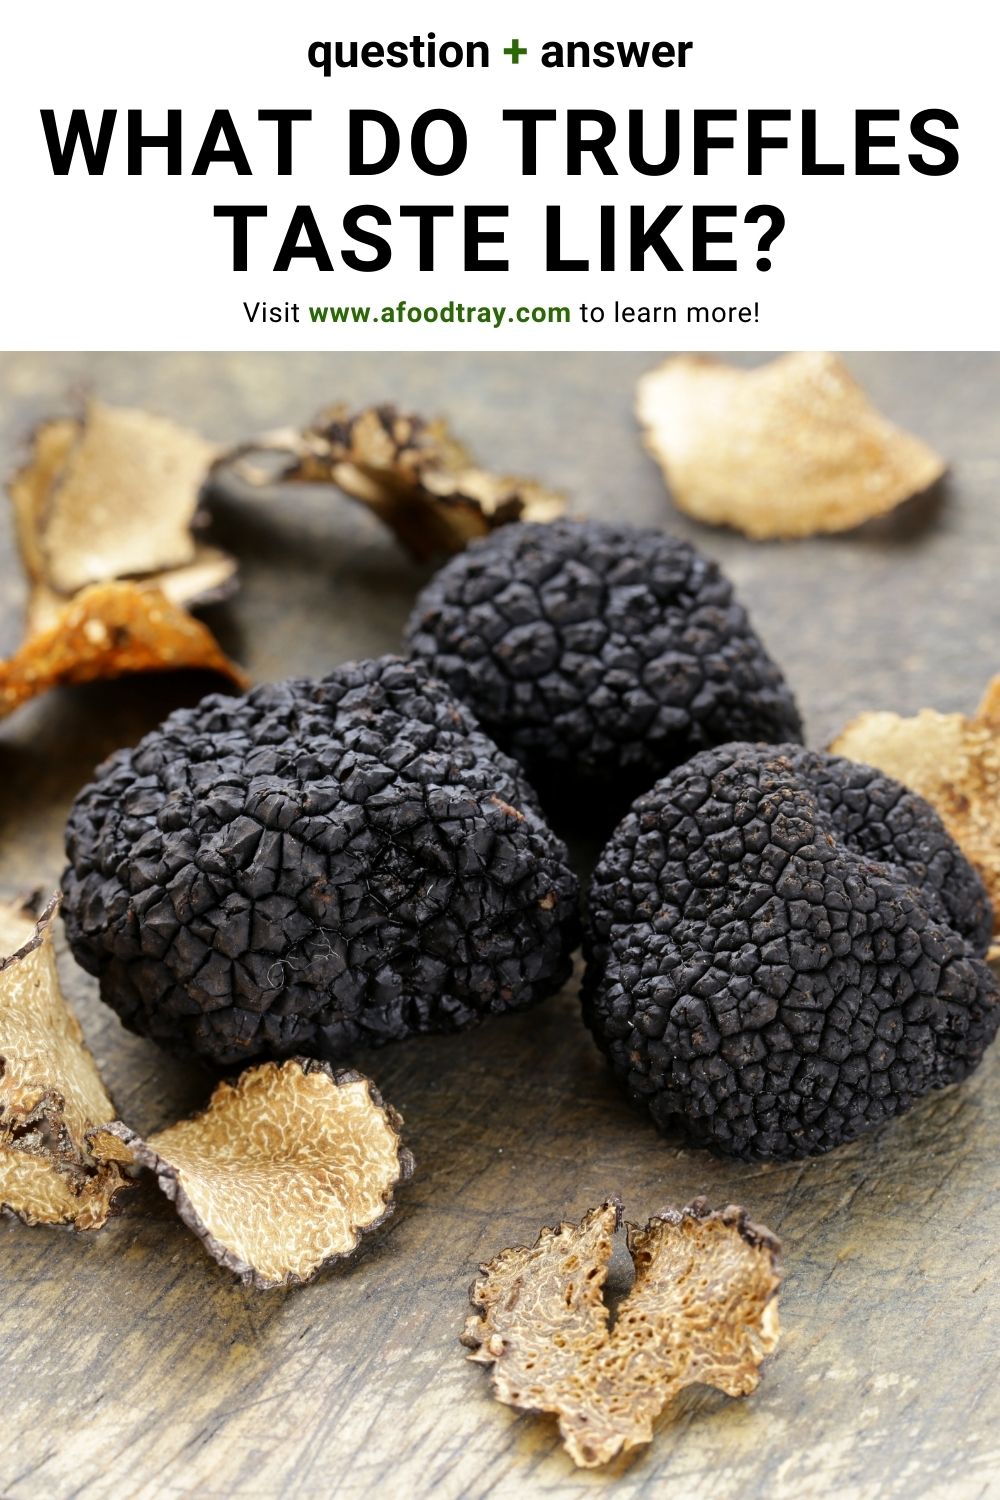 what do truffles taste like?